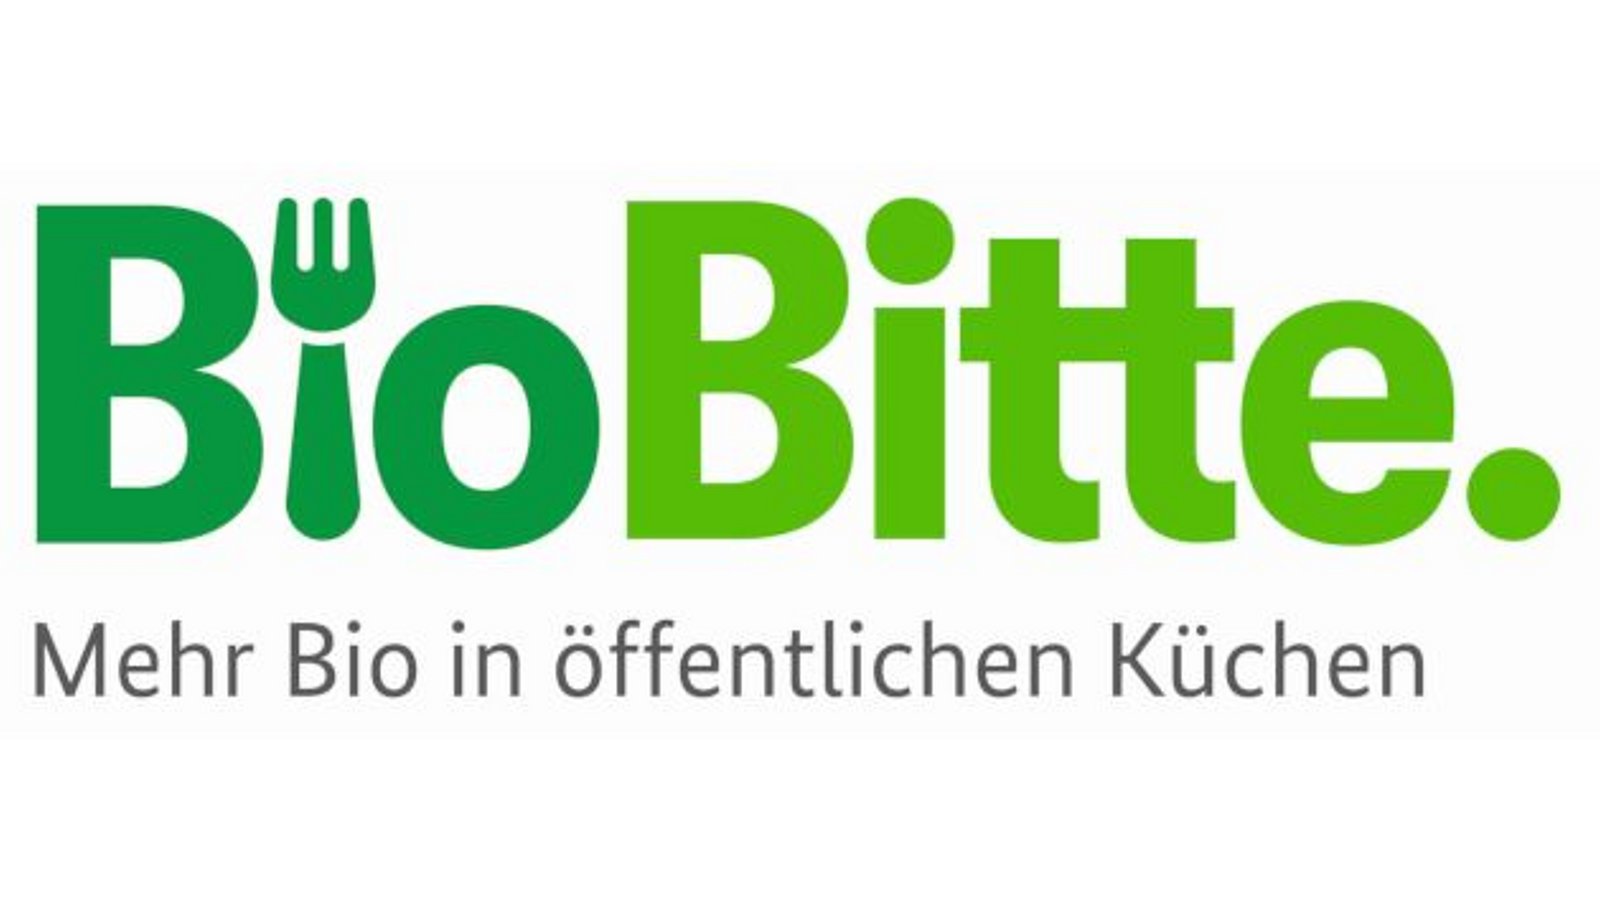 "BioBitte. Mehr Bio in öffentlichen Küchen"